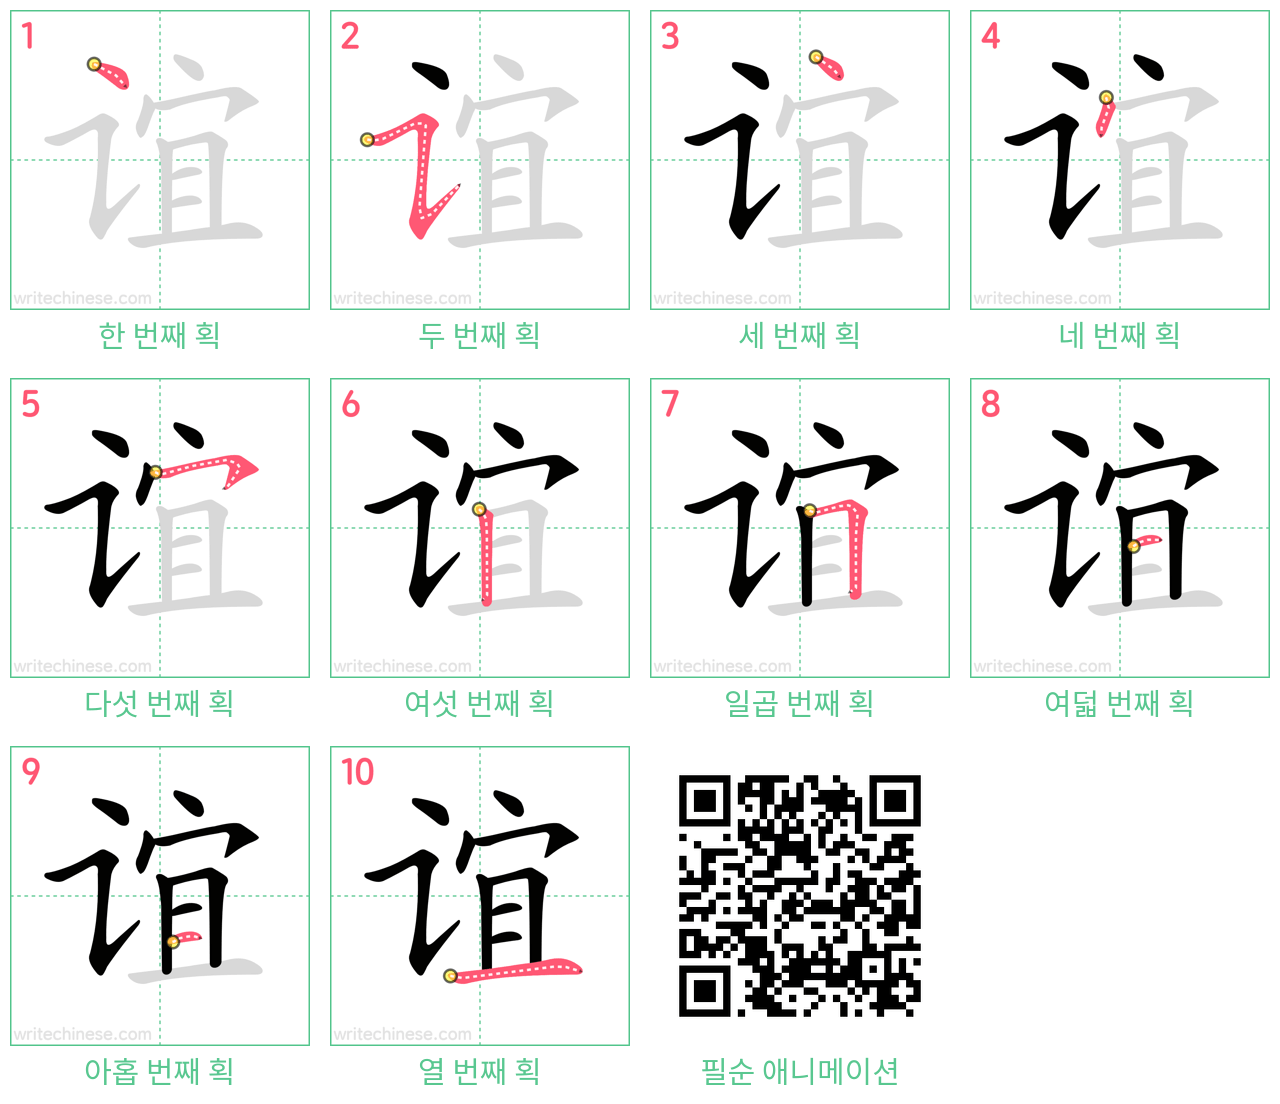 谊 step-by-step stroke order diagrams